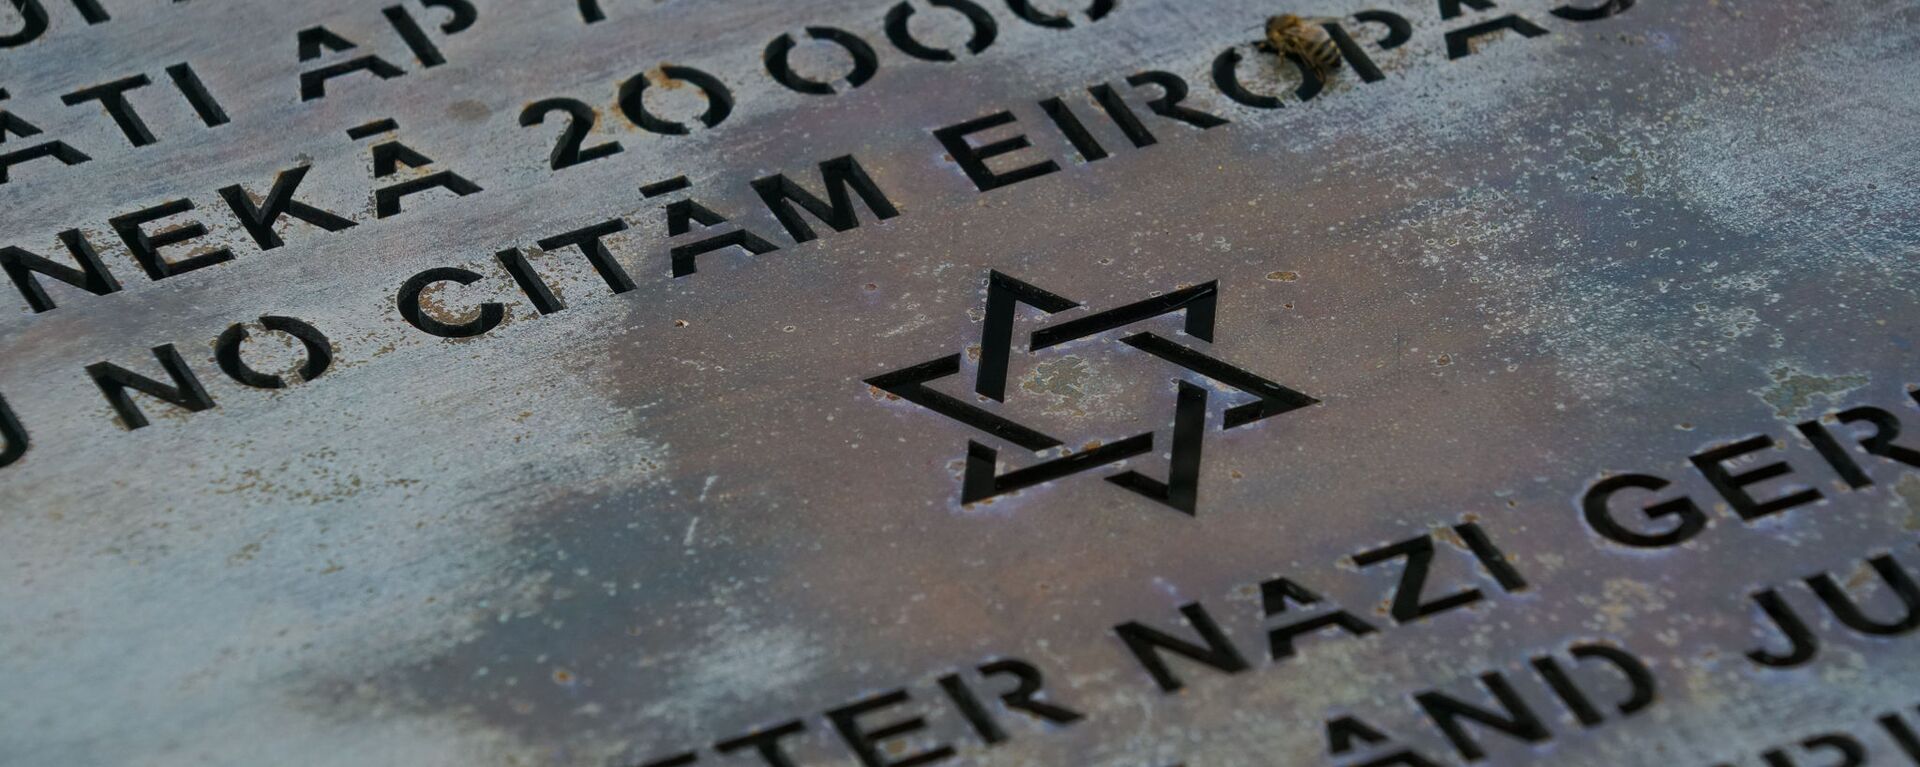 Памятный знак у стен сгоревшей Рижской хоральной синагоги - Sputnik Латвия, 1920, 04.08.2020